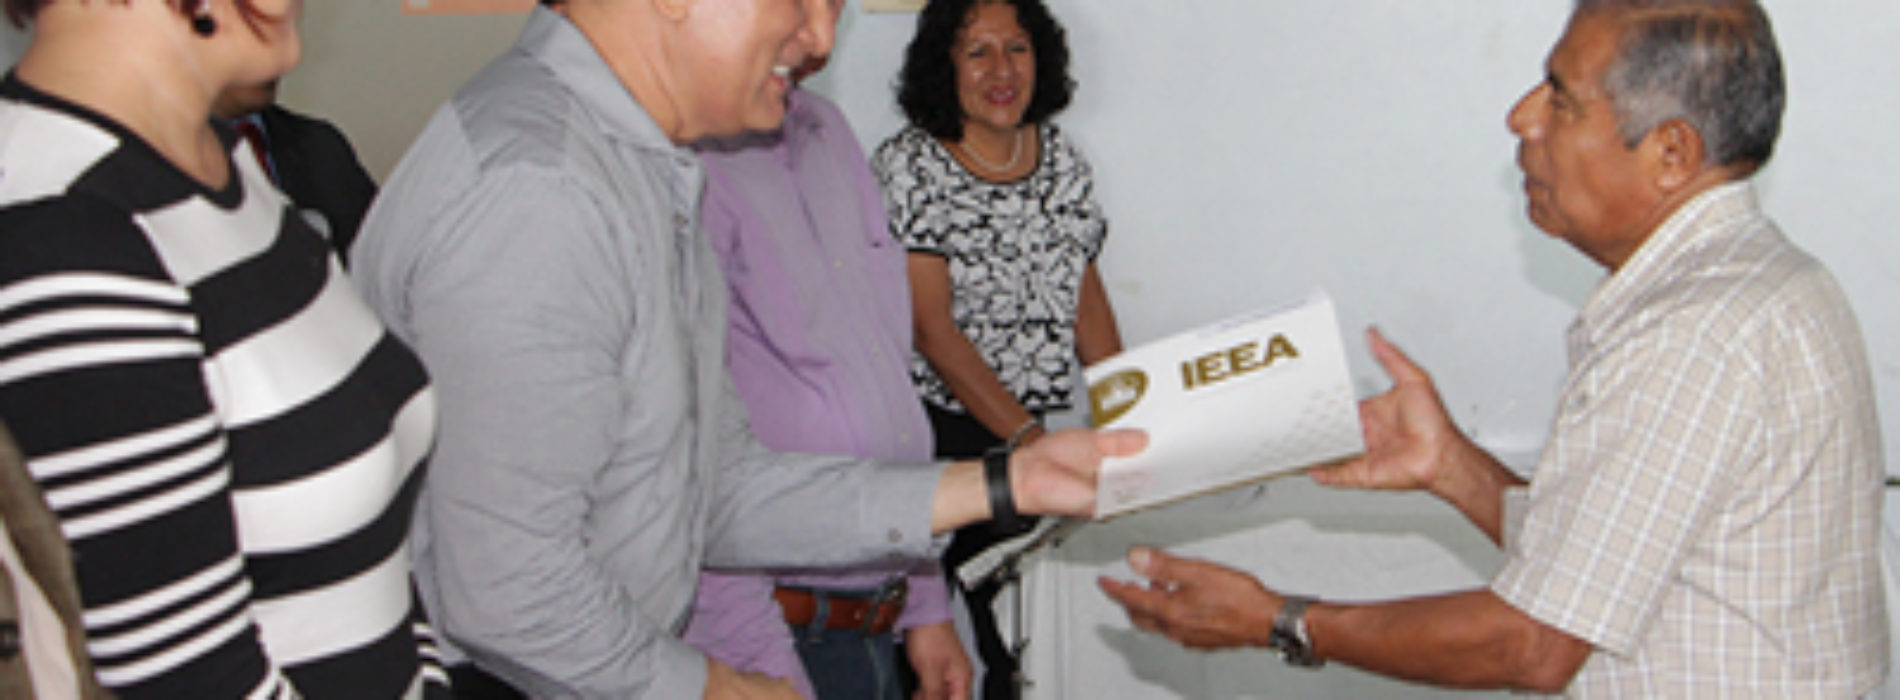 Directivos del IEEA y de la Secretaría de Administración entregan certificados de educación básica